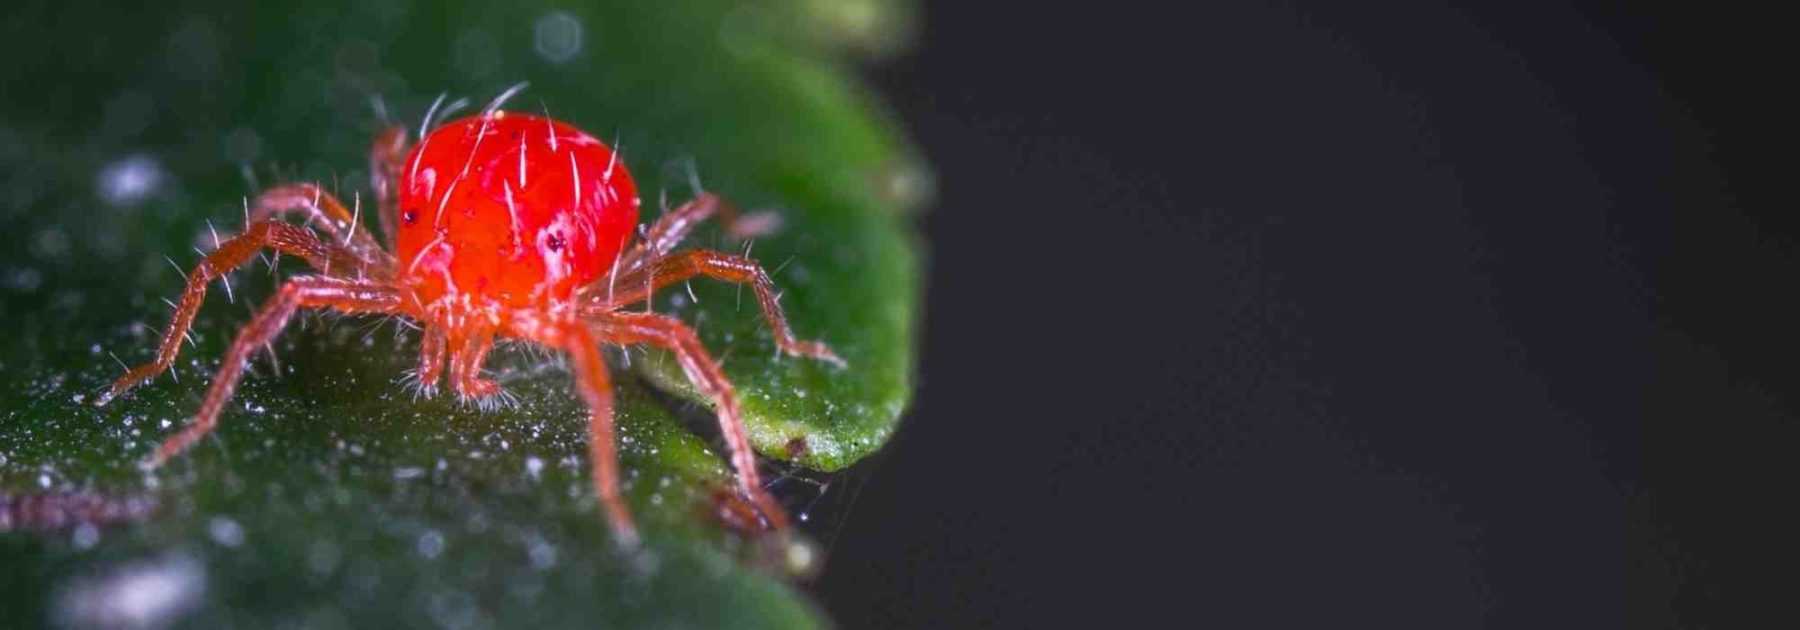 Araignée rouge : identification et traitement - Promesse de Fleurs